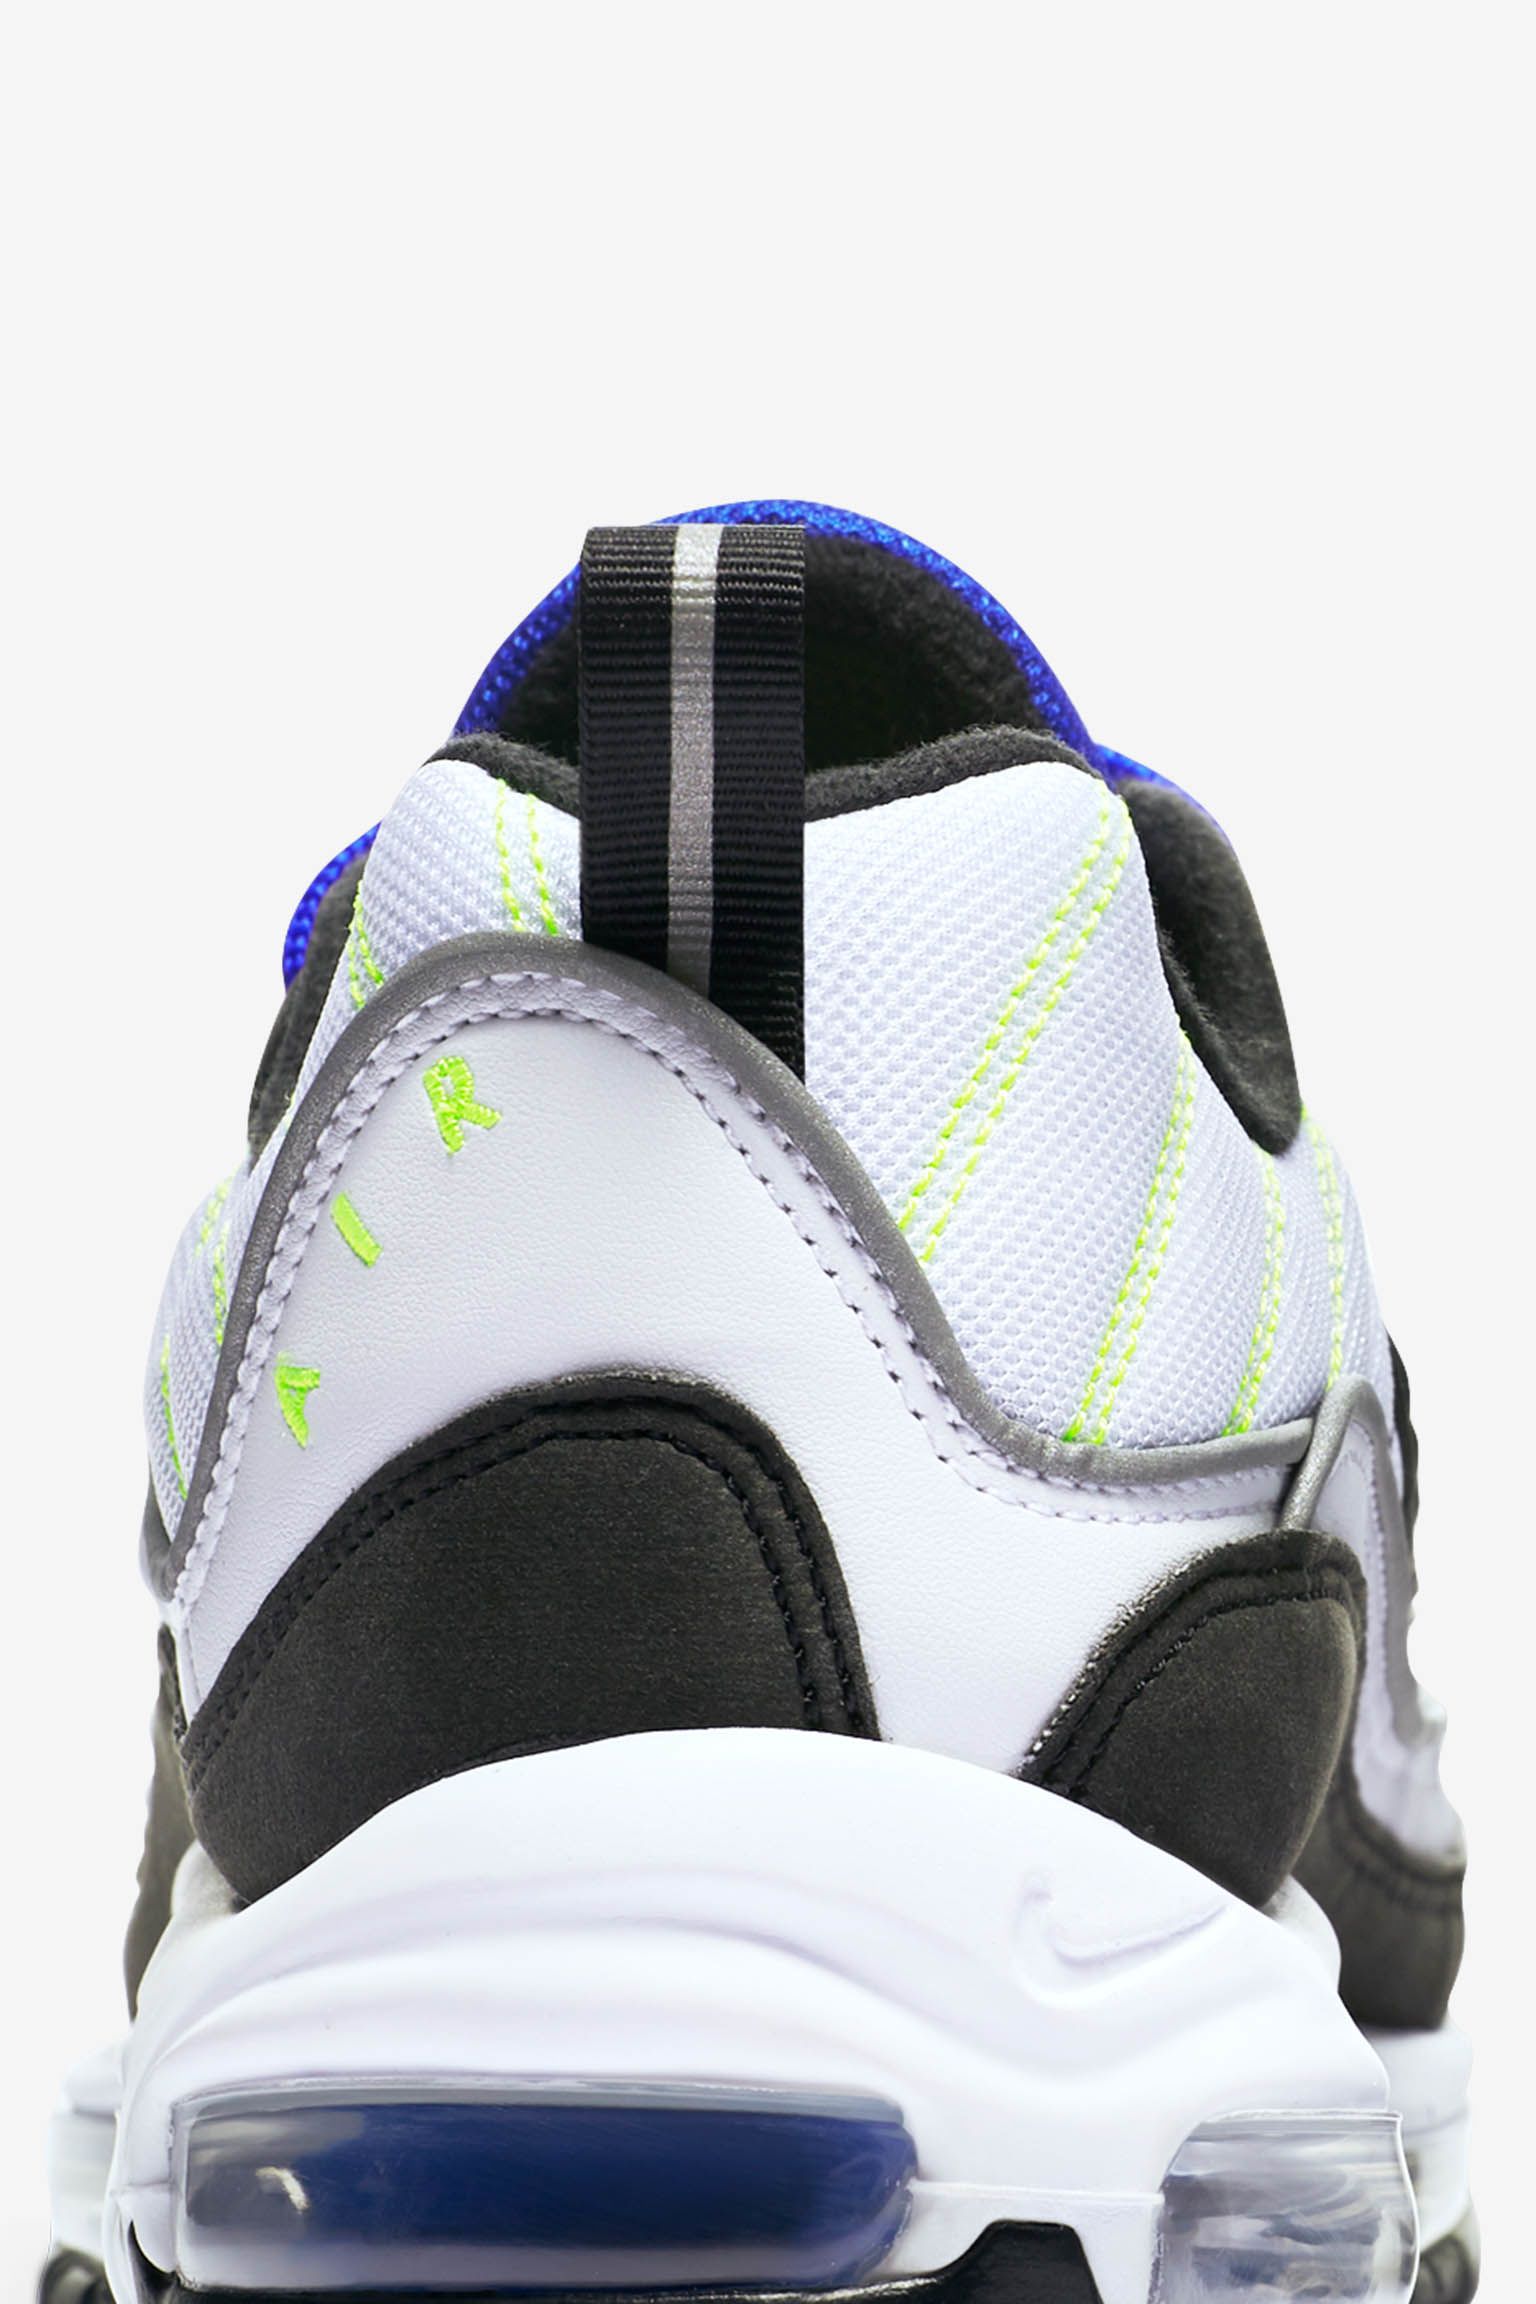 Nike Air Max 98 'White & Black & Racer Blue' Release Date. Nike SNKRS لبيع الالات الموسيقية